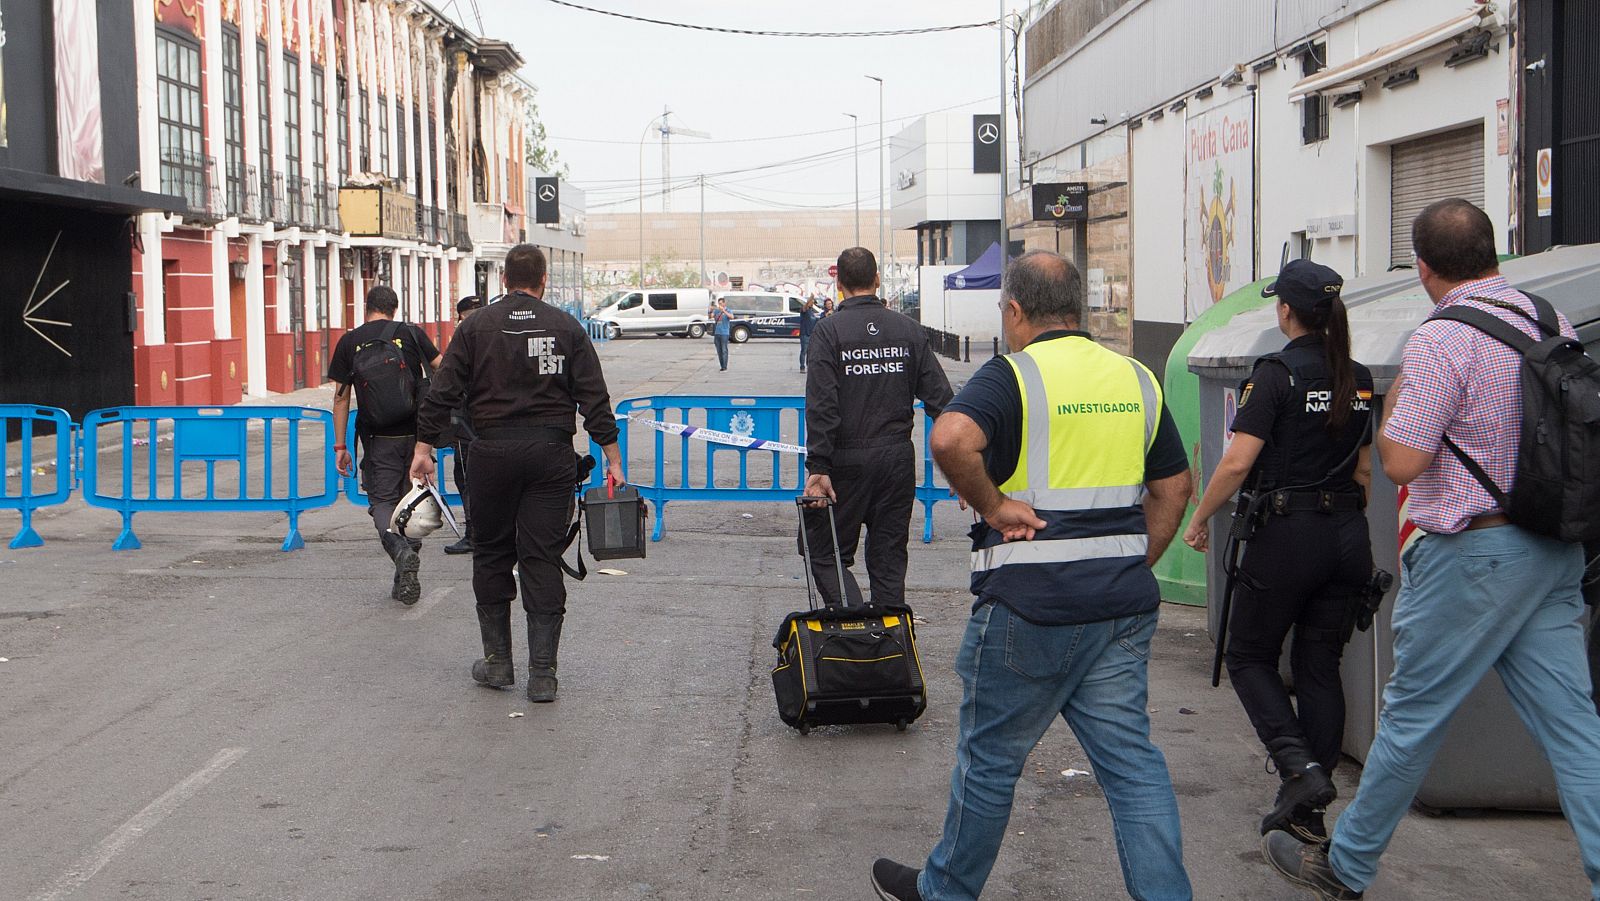 La tragedia de Murcia abre debate sobre las condiciones de seguridad de discotecas